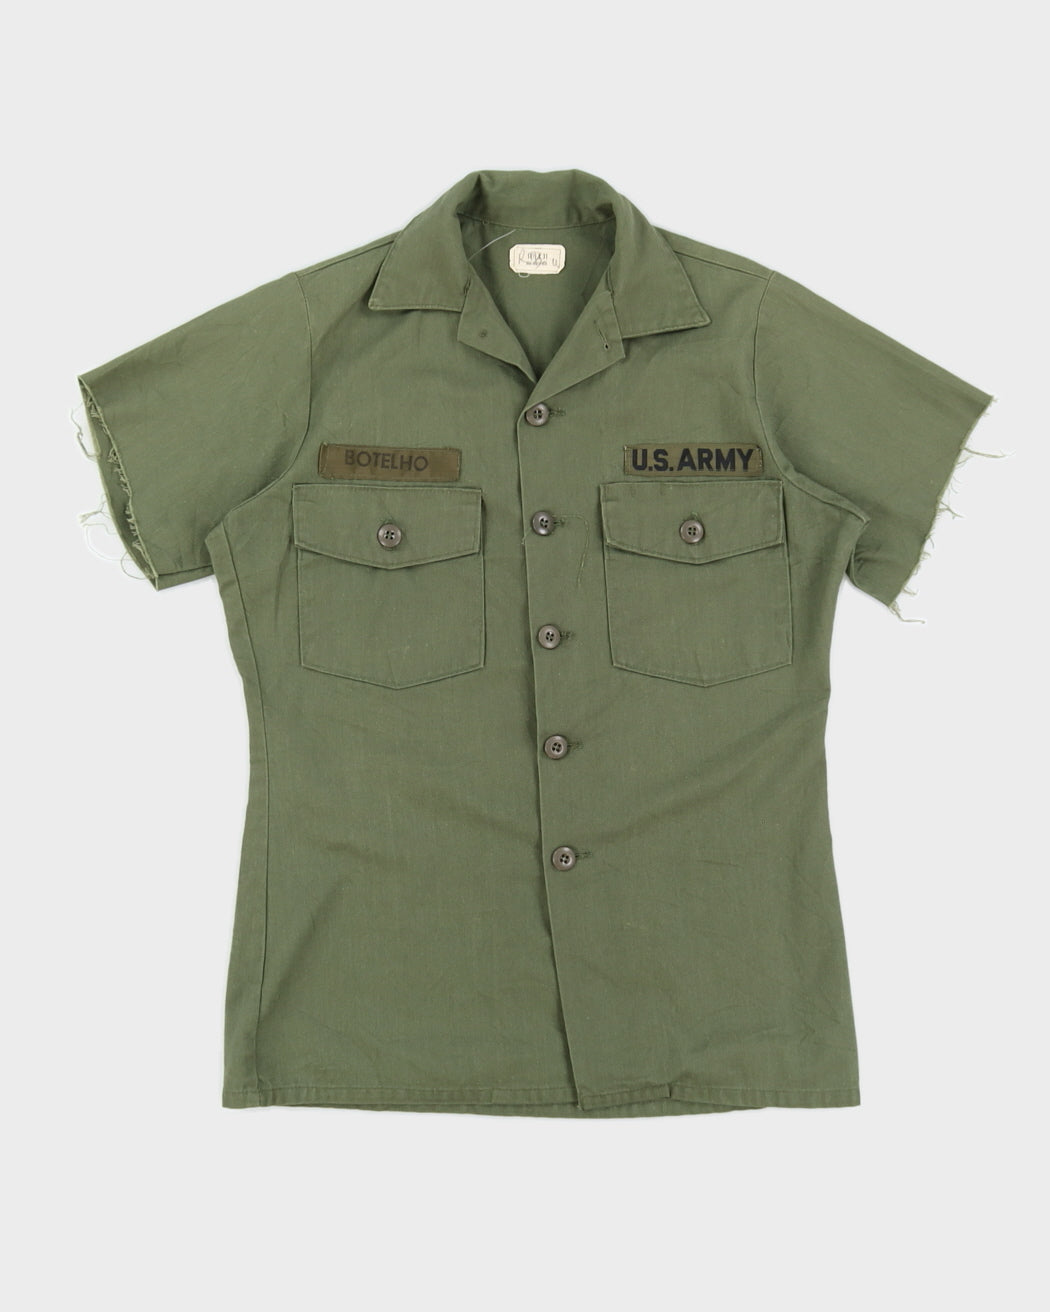 70s Vintage US Army OG-107 Shirt - S